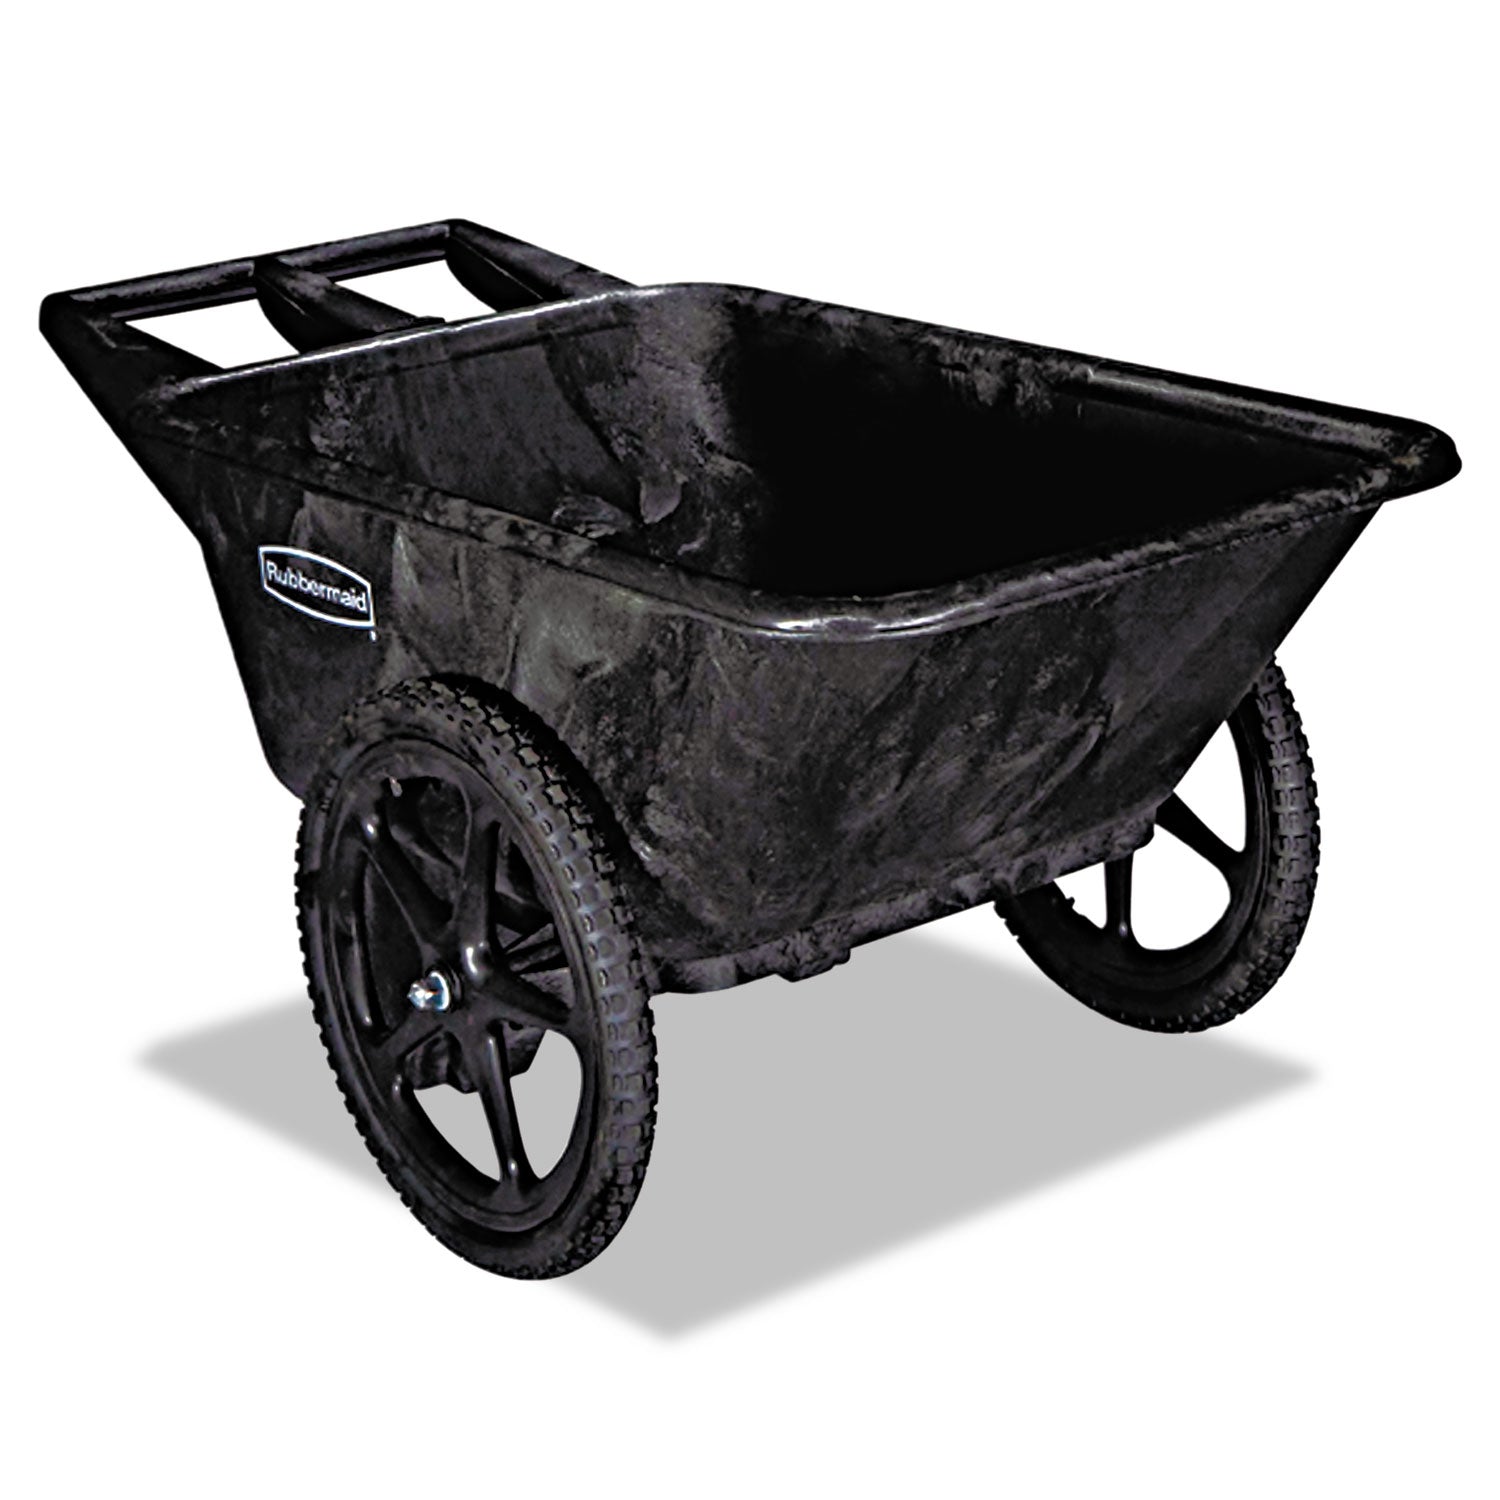 Big Wheel Agriculture Cart, 300-lb Cap, 32-3/4 x 58 x 28-1/4, Black - 1